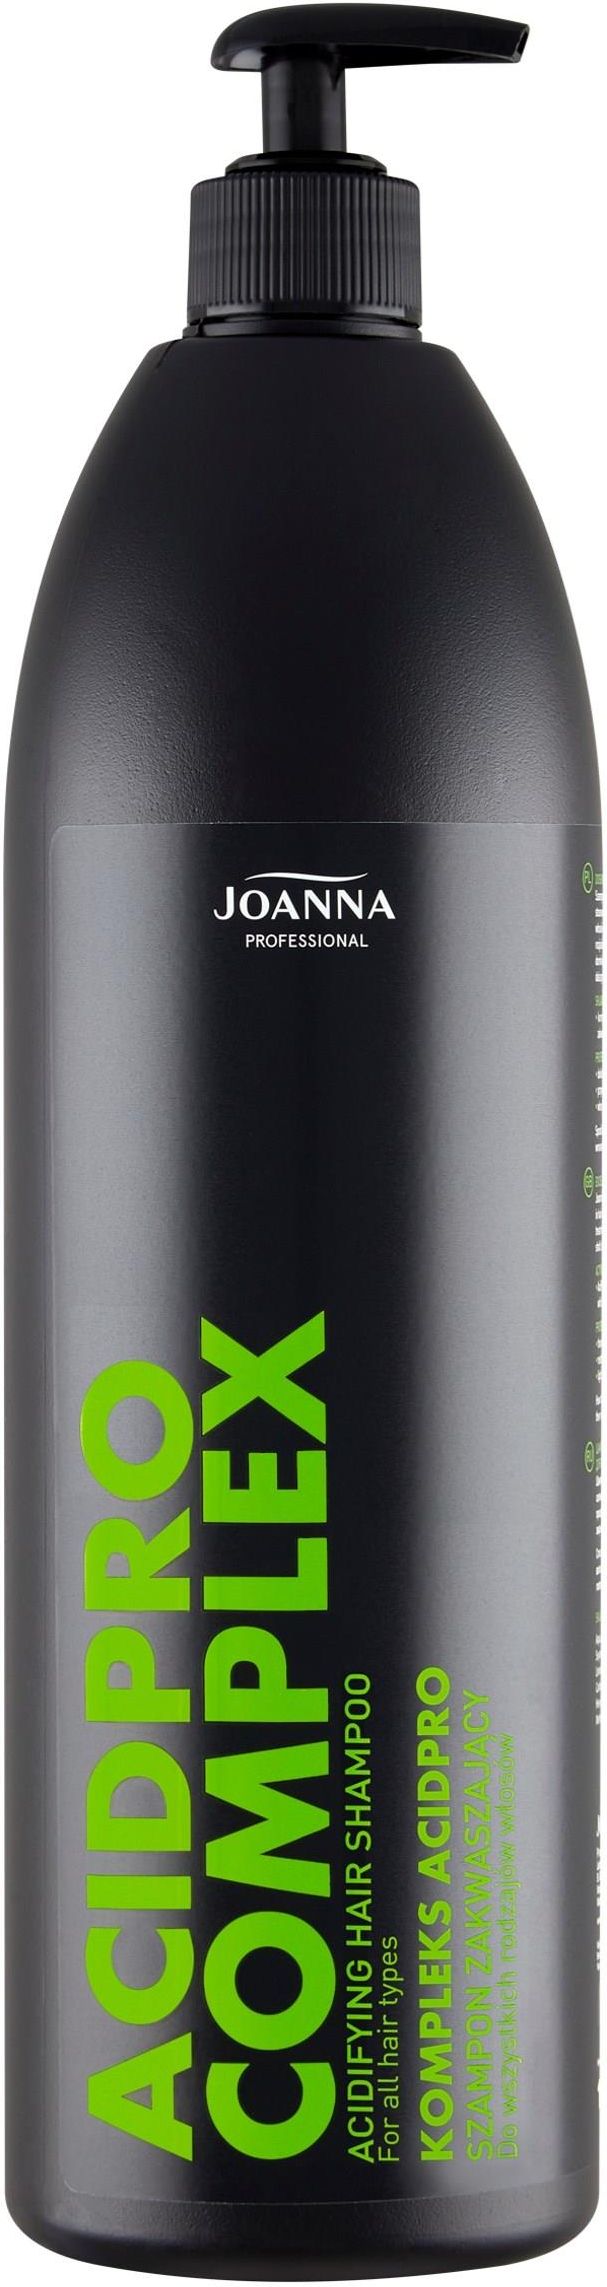 joanna professional szampon opinie